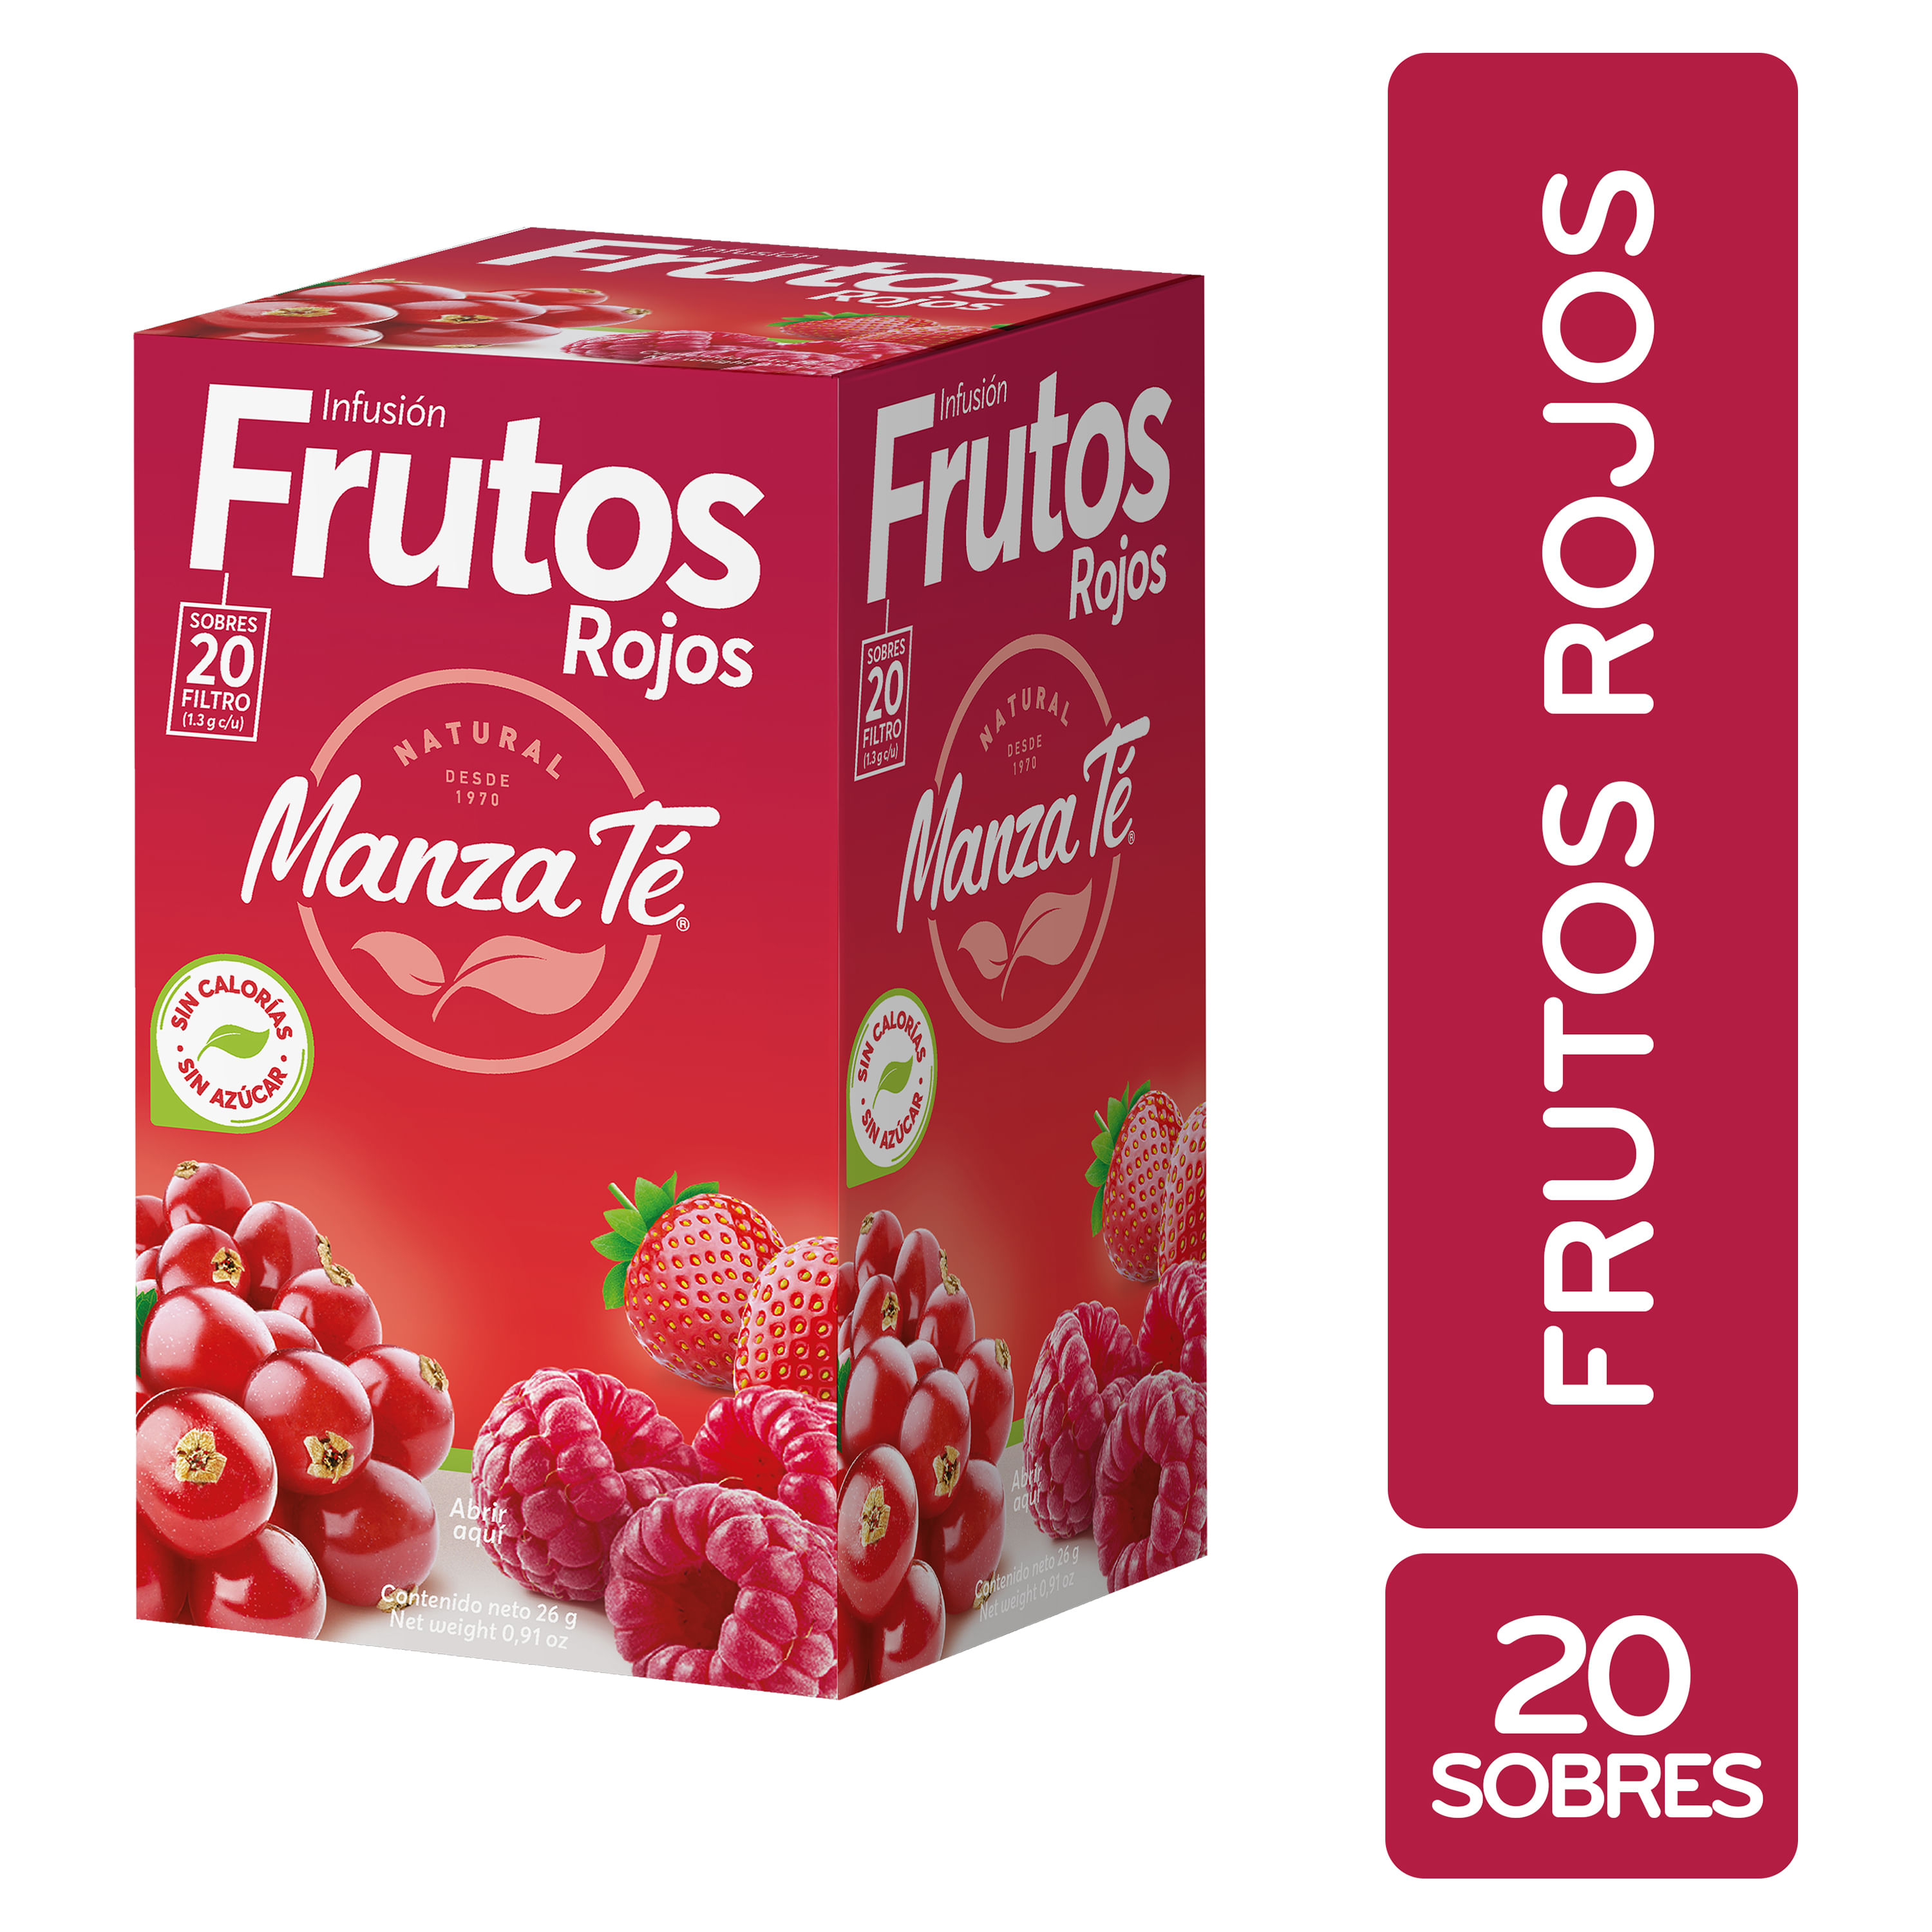 Infusion-Frutos-Rojos-Manza-Te-26G-20U-1-68258